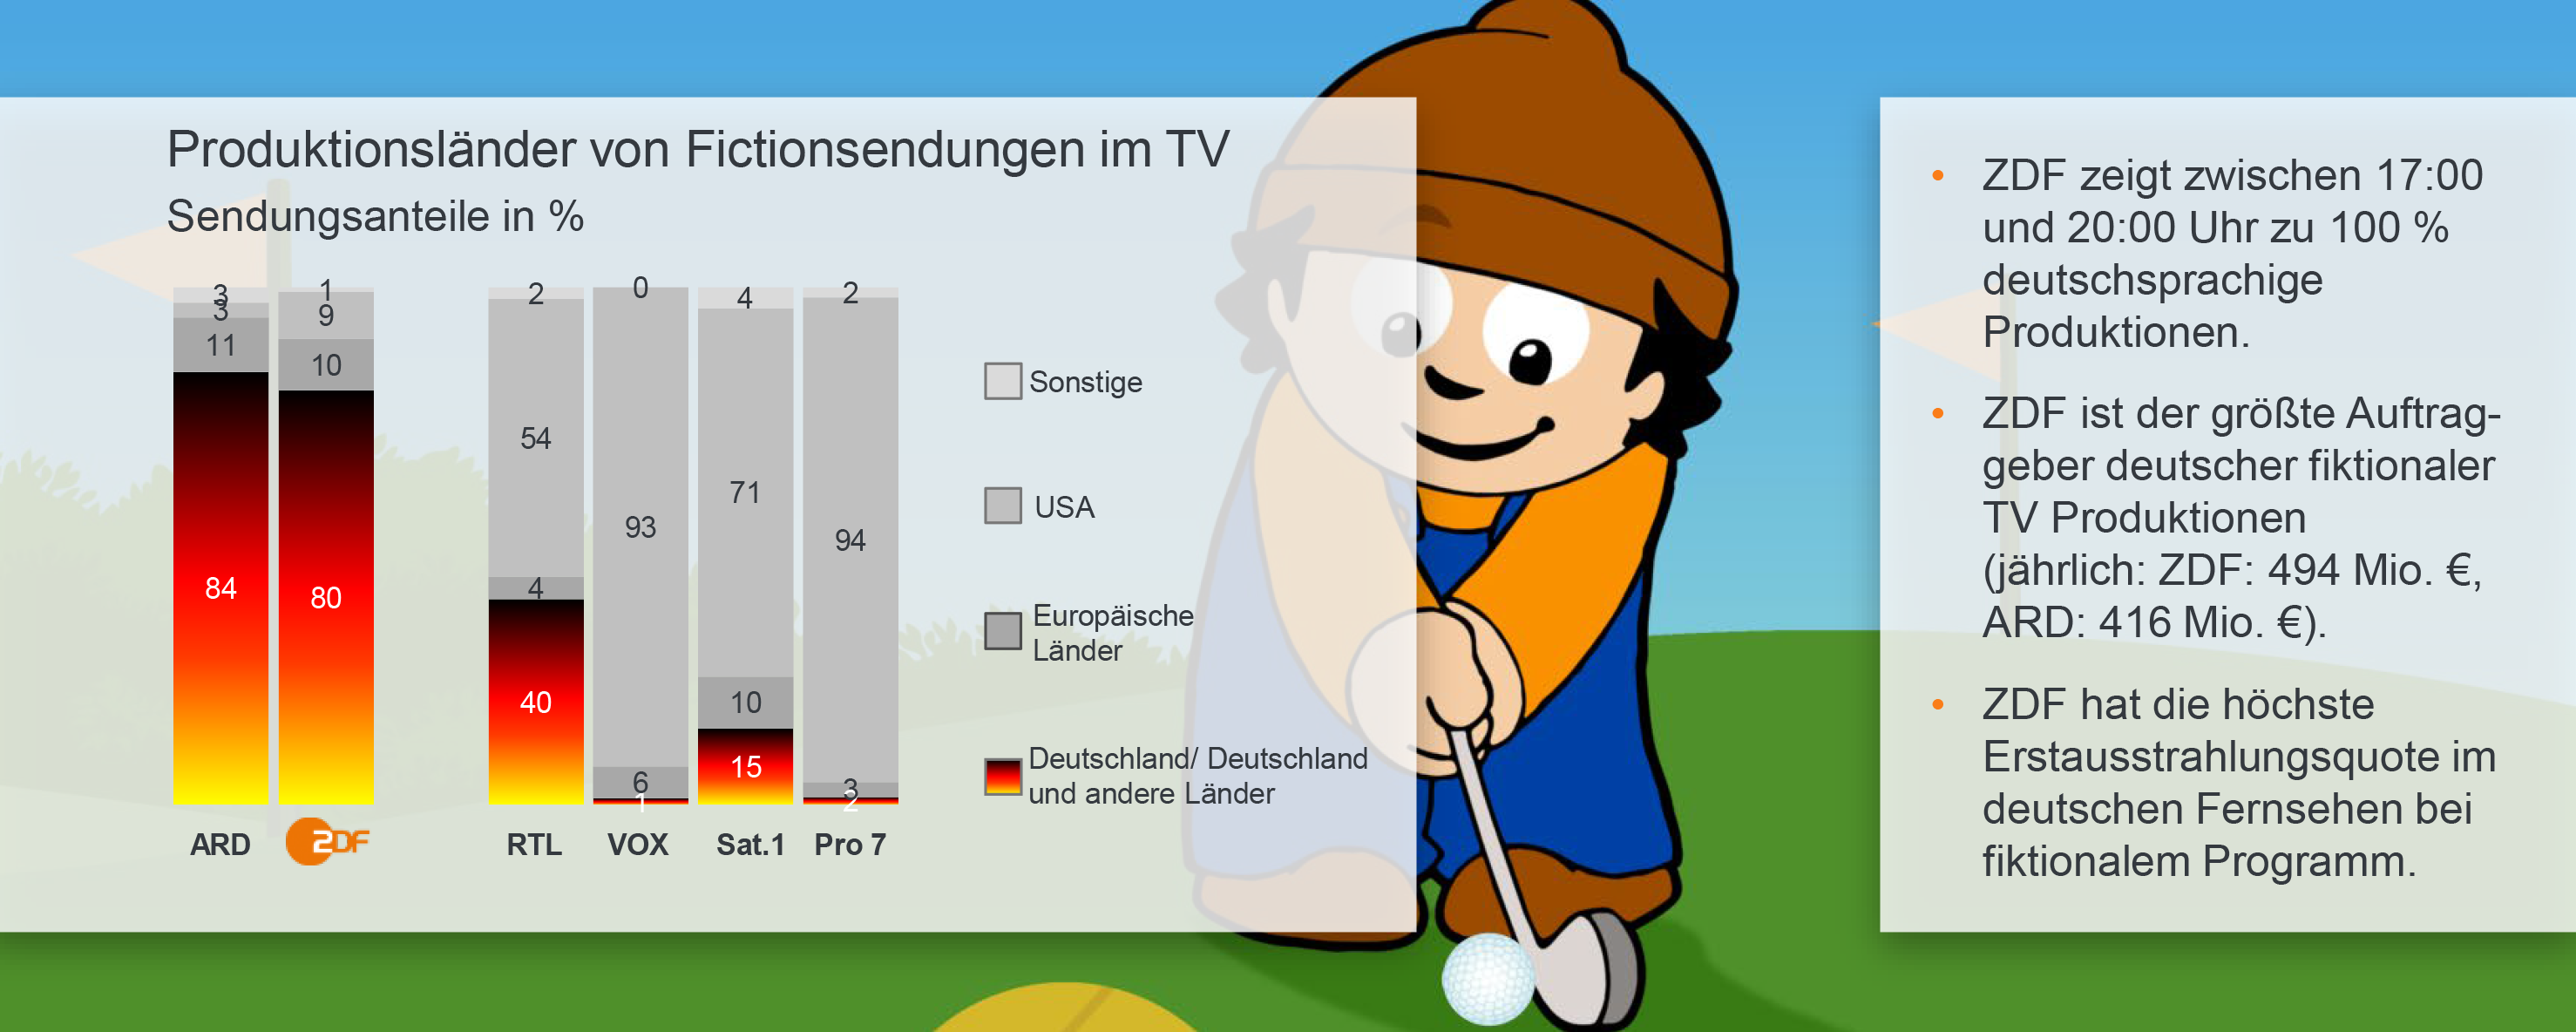 Deutsche Produktionen als Qualitätsfaktor (© ZDF Werbefernsehen GmbH)